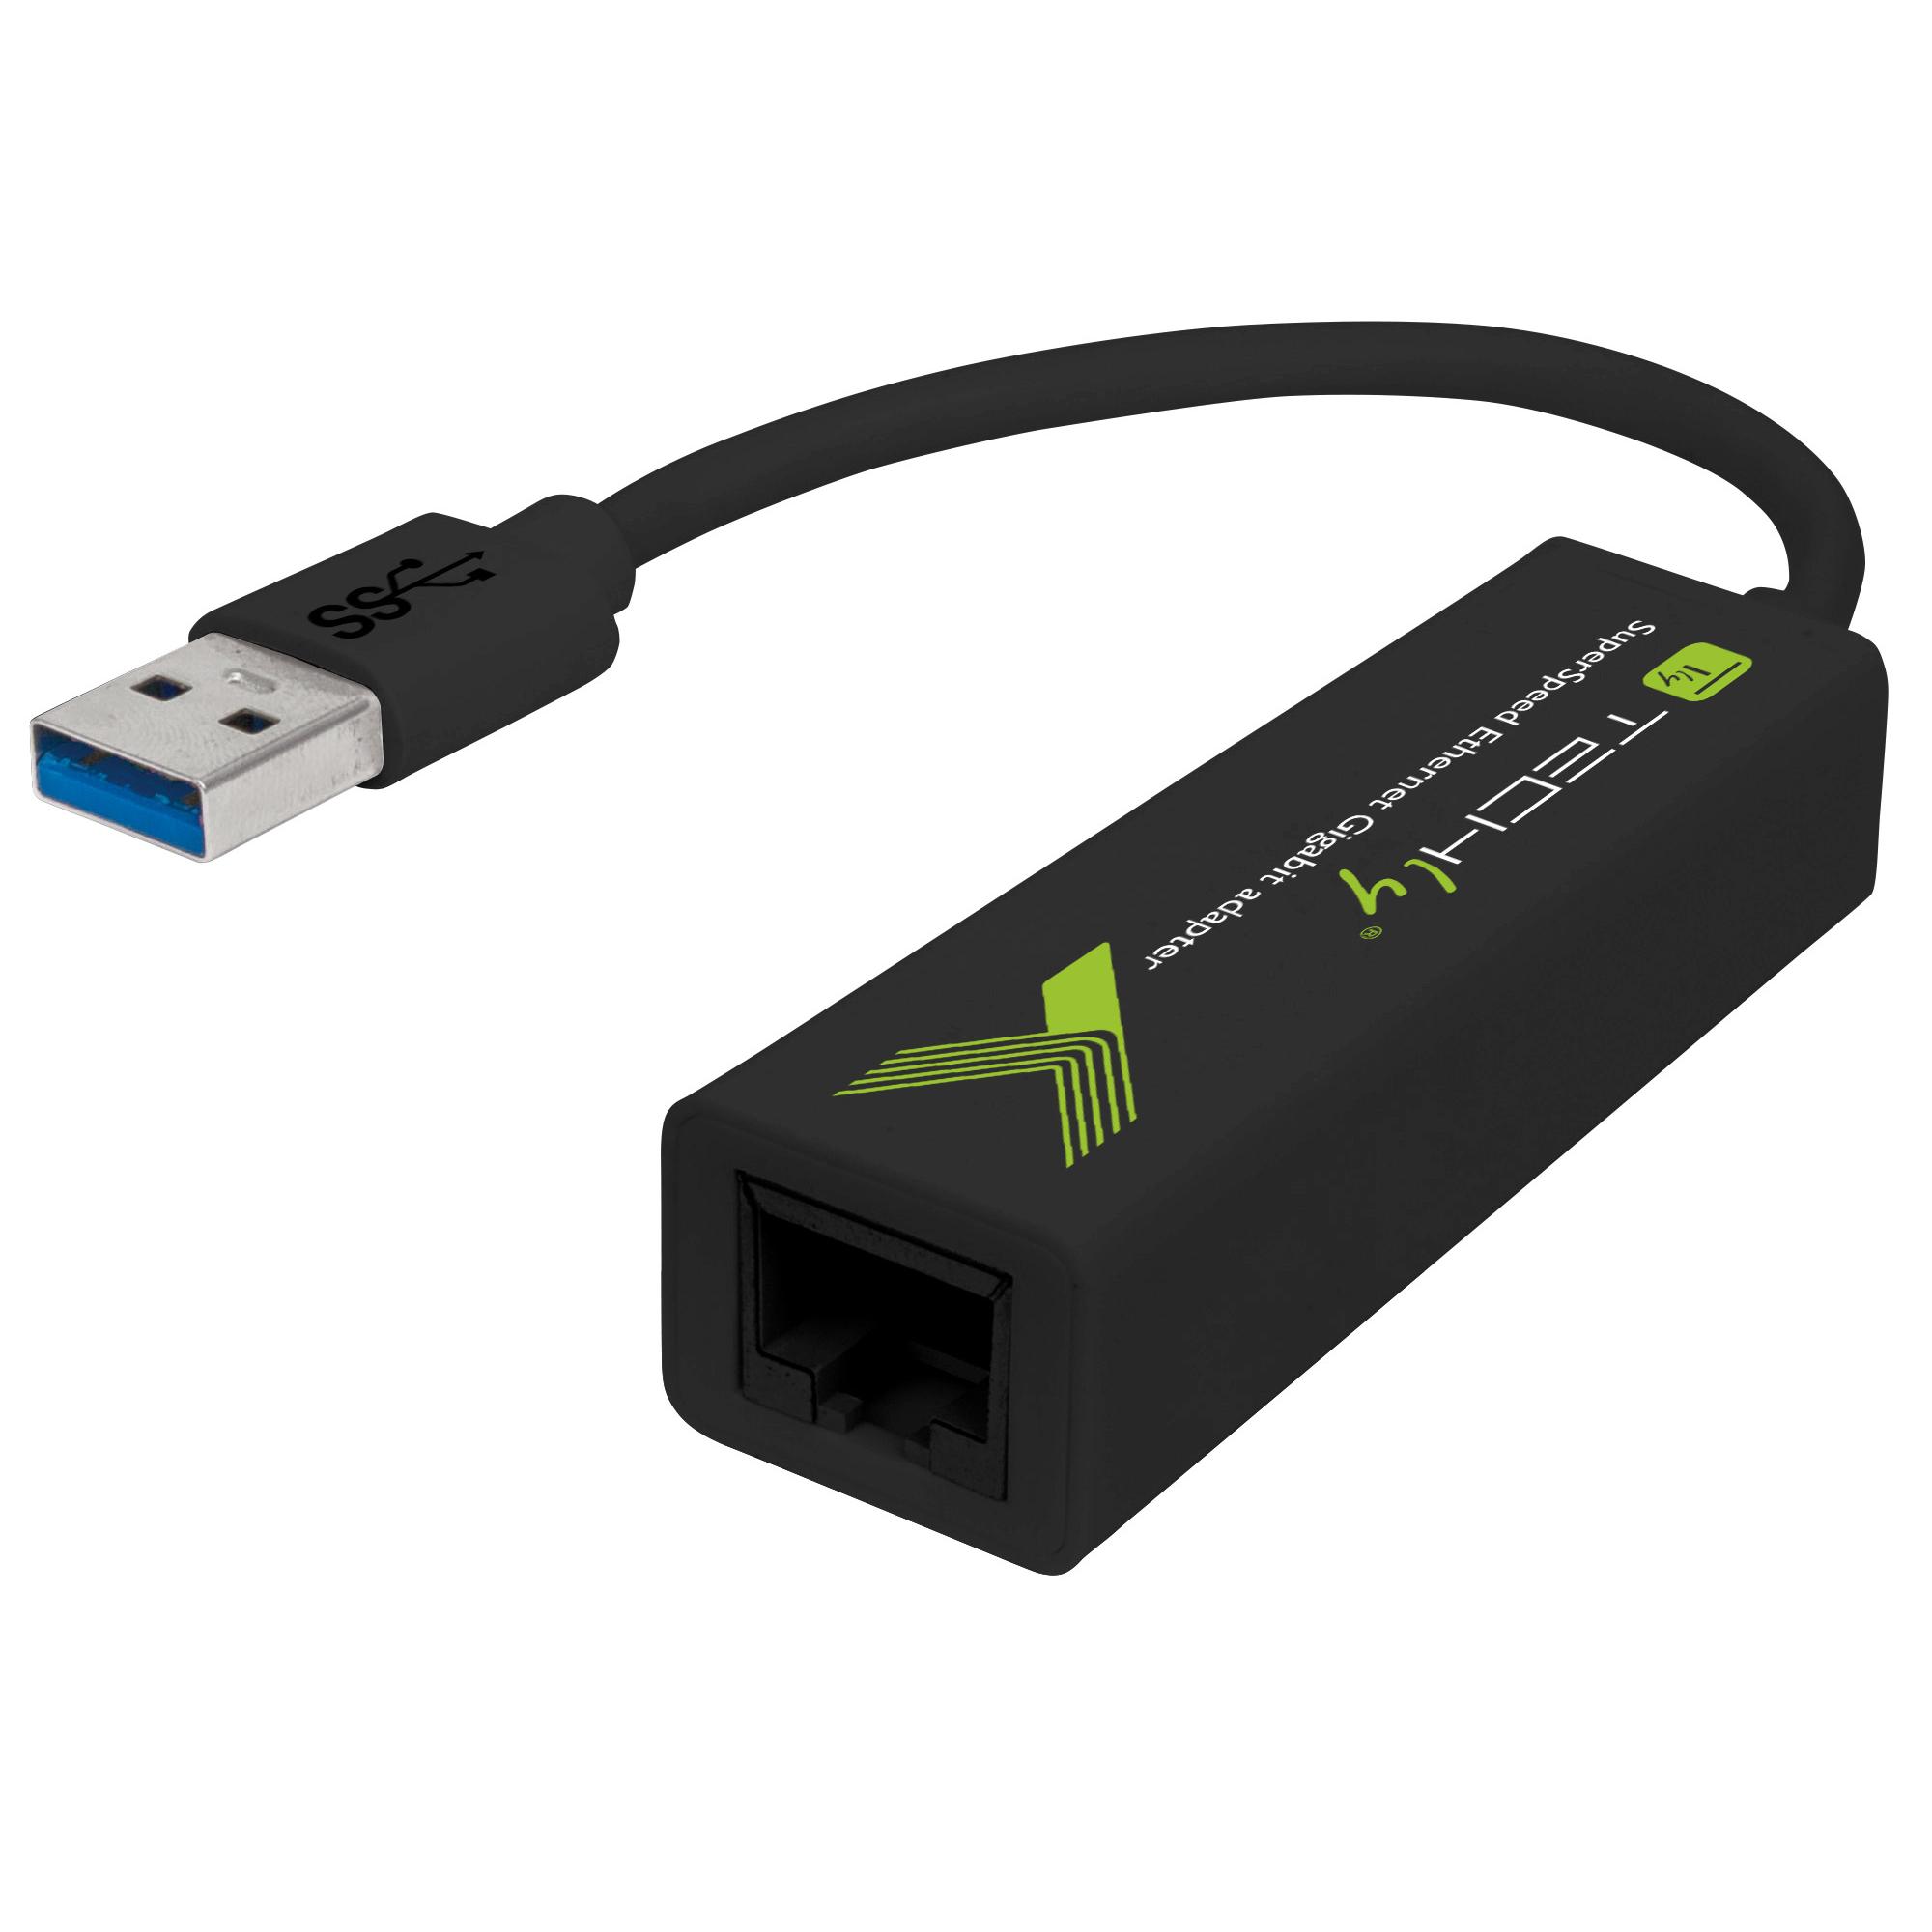 Adattatore di rete USB 3.0 Gigabit